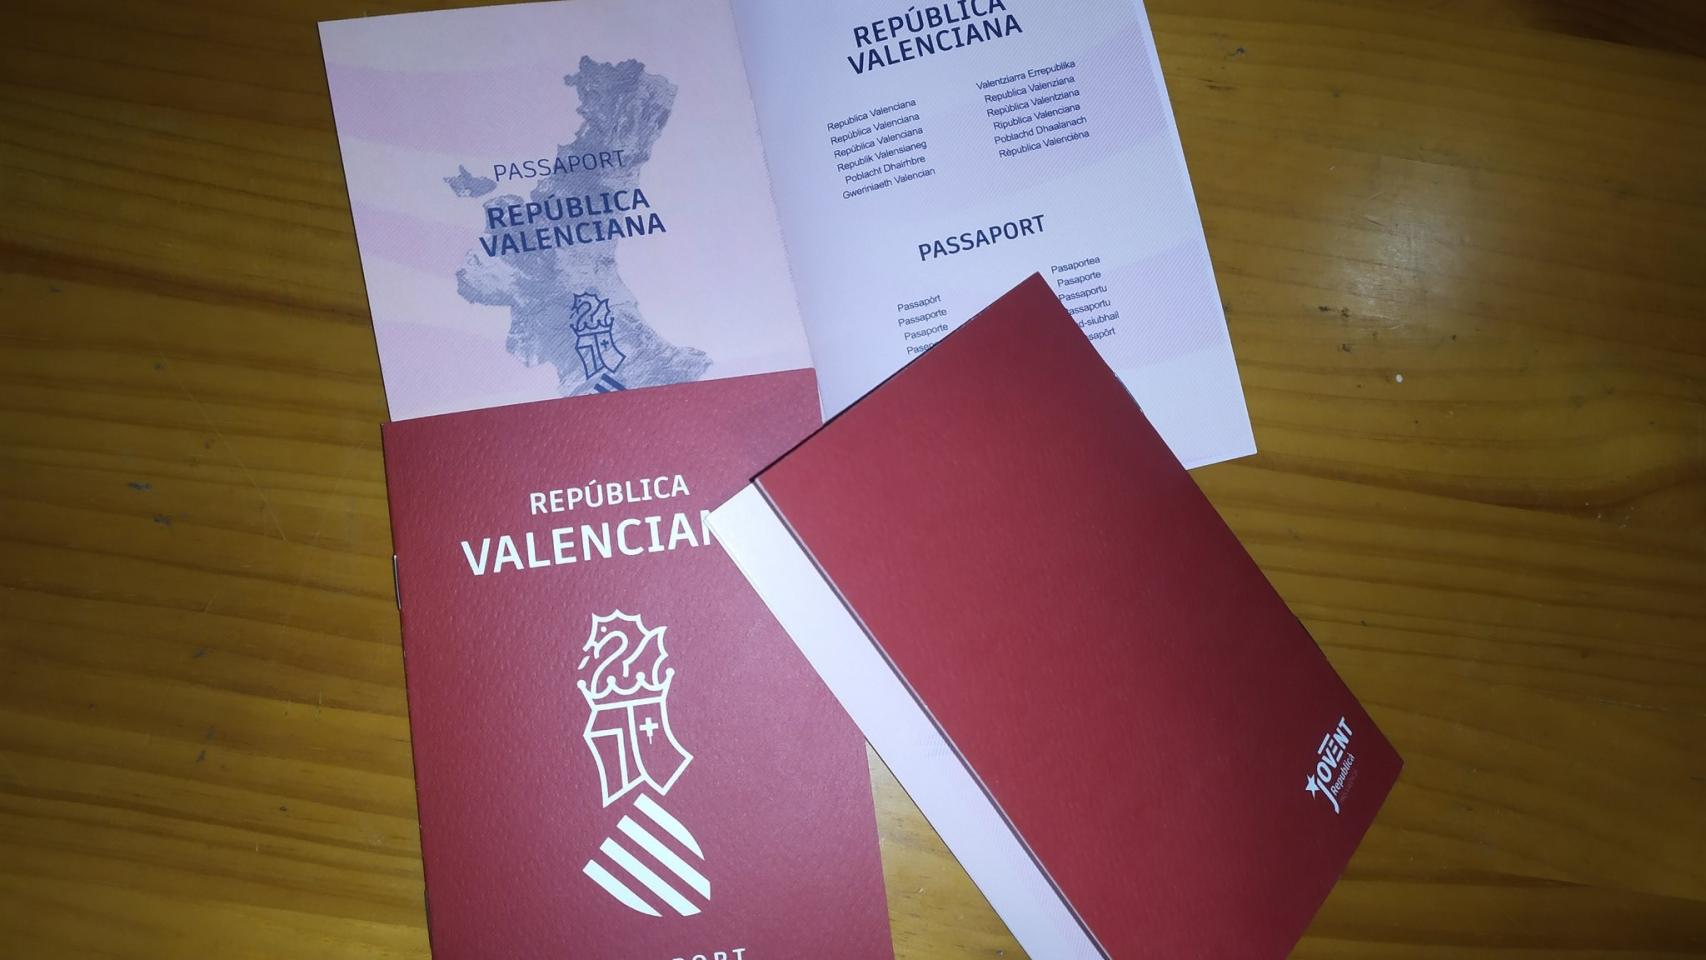 Pasaportes de la República Valenciana distribuidos por ERC en Valencia.